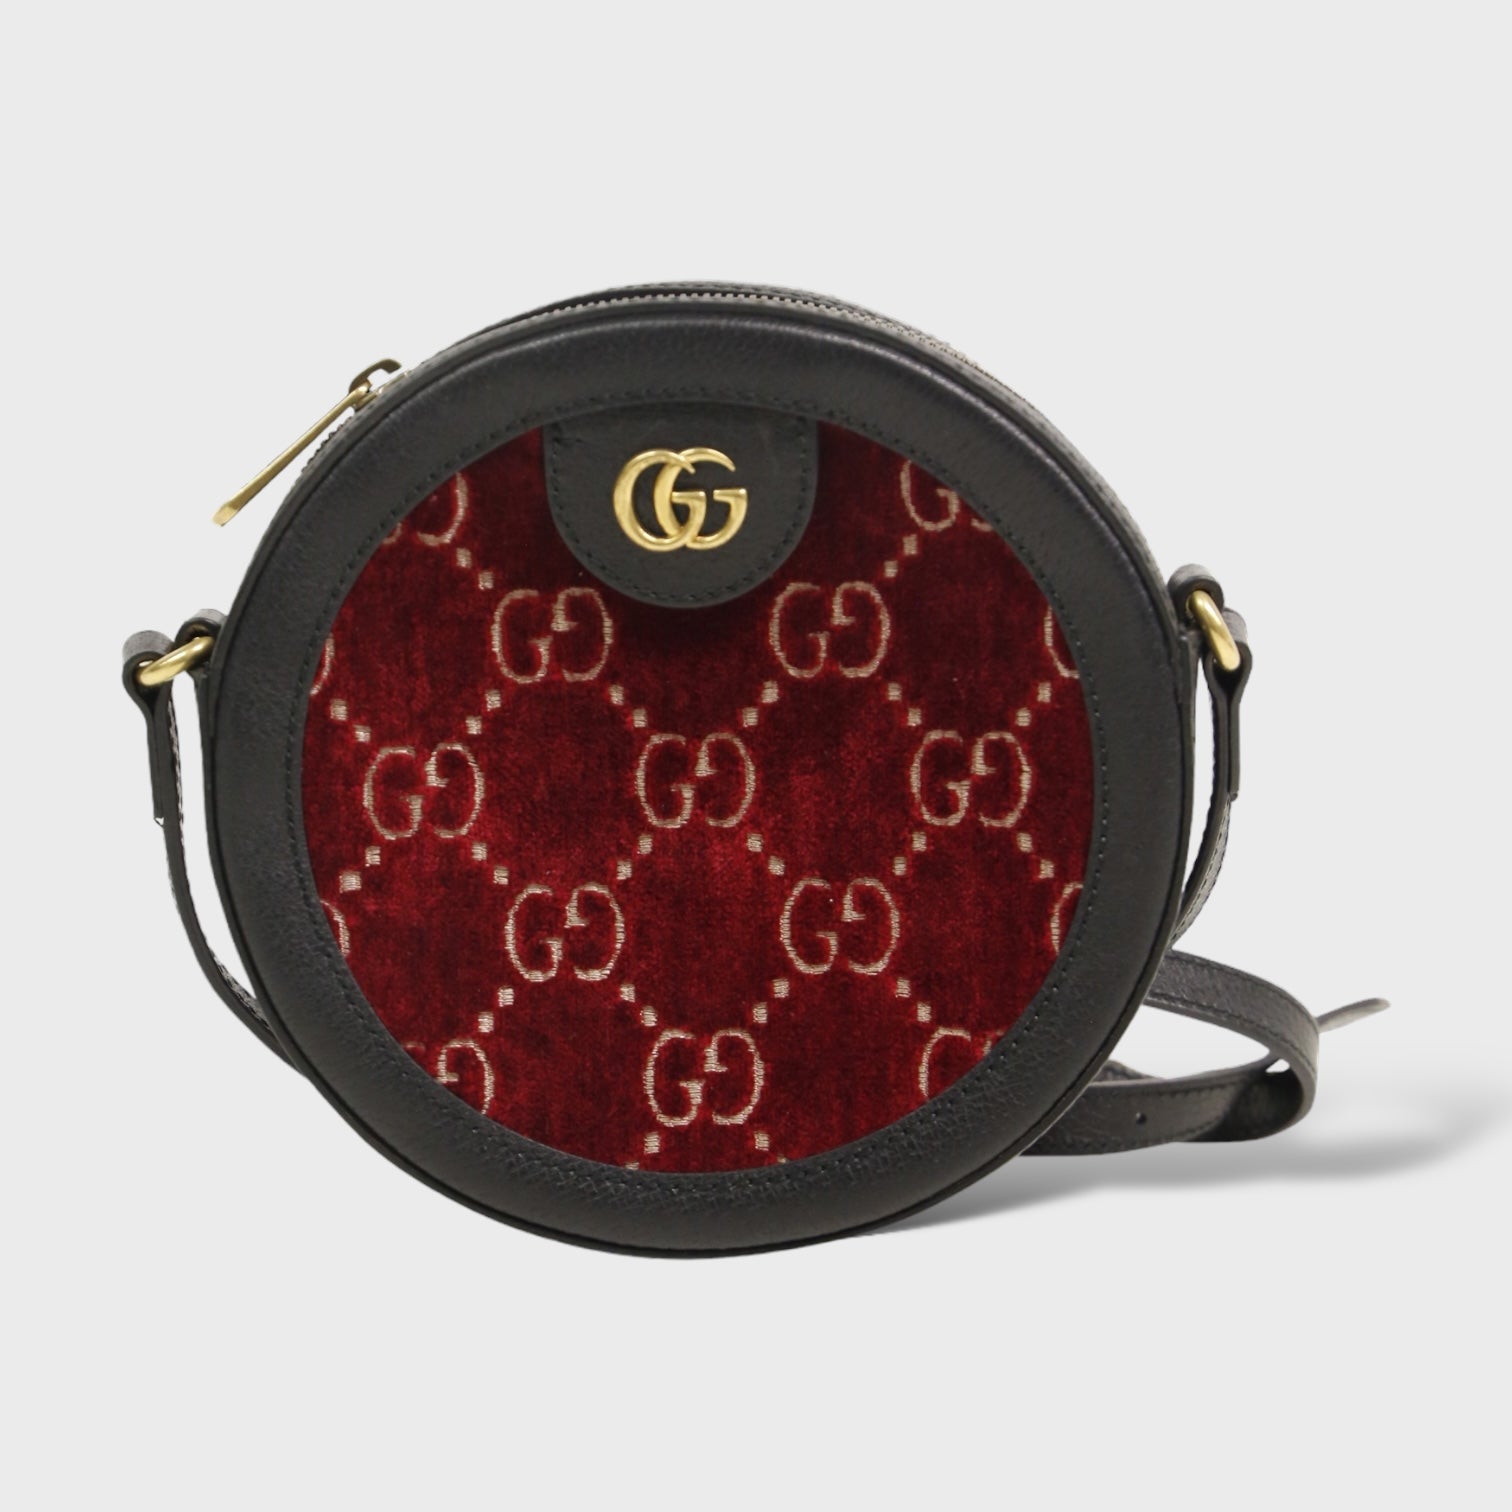 Second Hand Gucci Designertaschen jetzt online kaufen auf kaleaz.